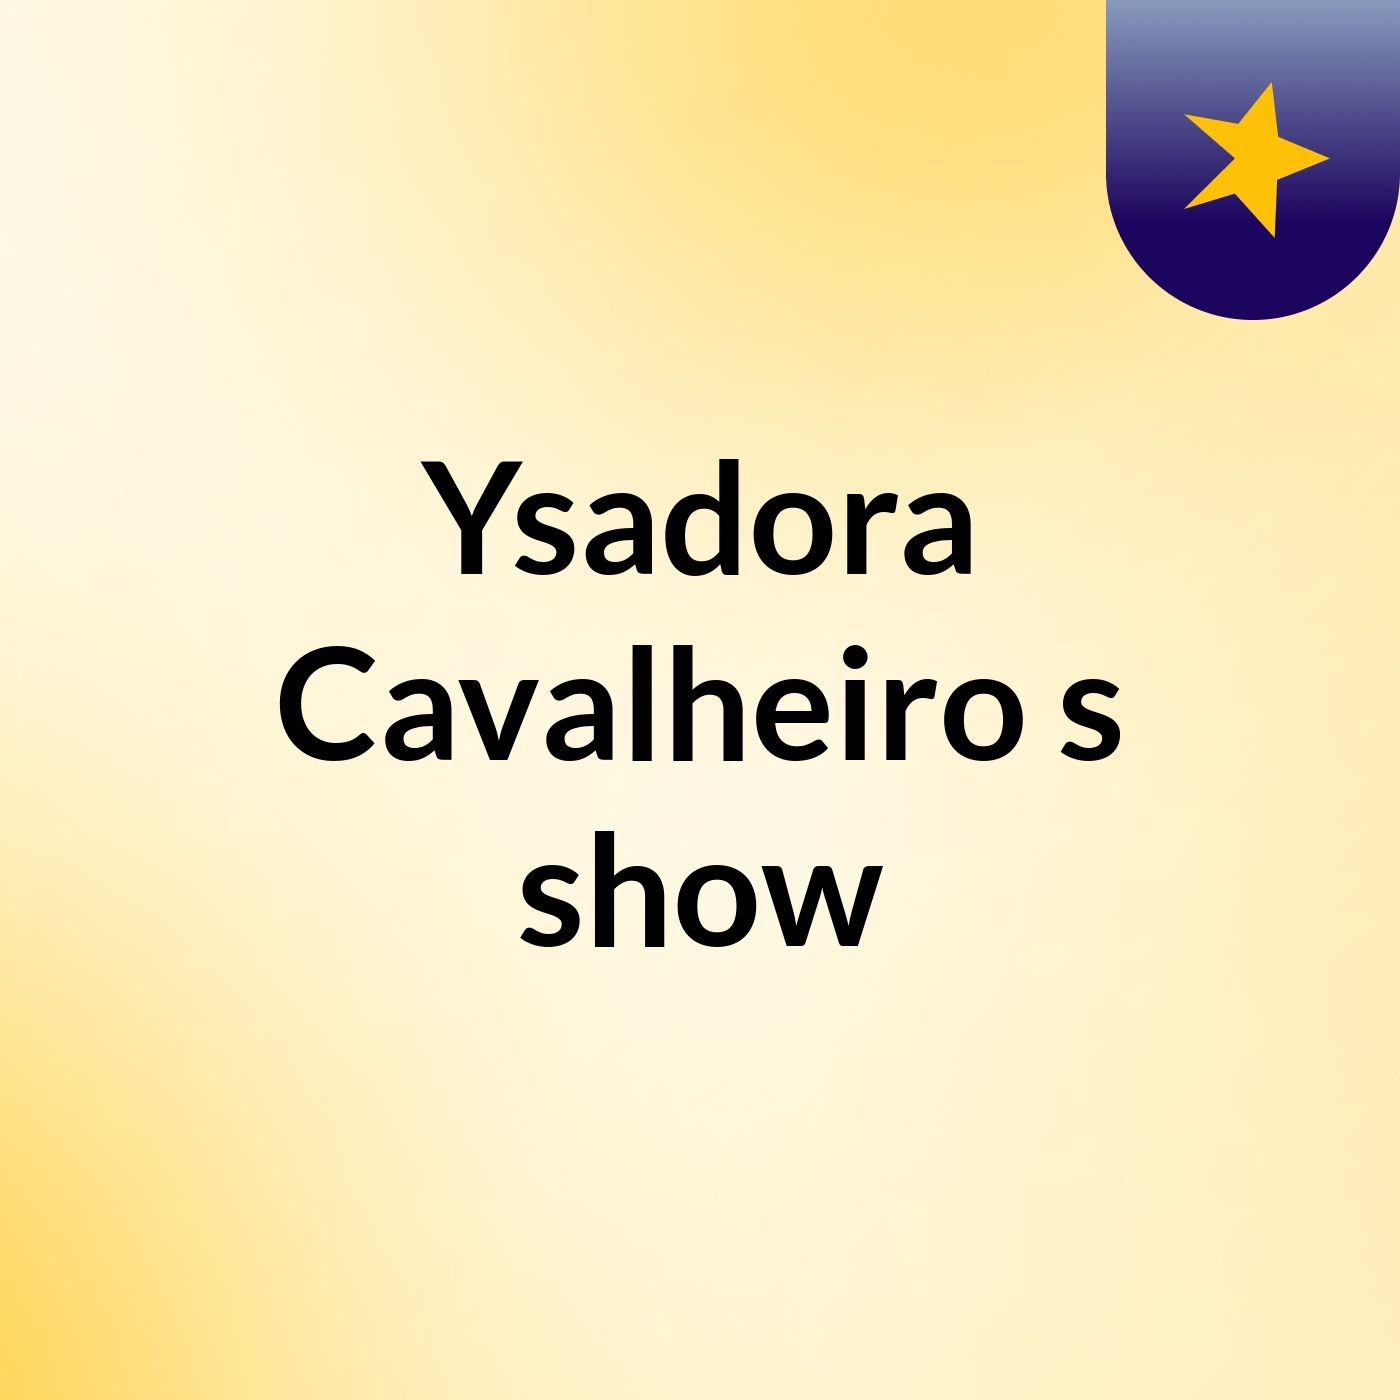 Episódio 4 - Ysadora Cavalheiro's show